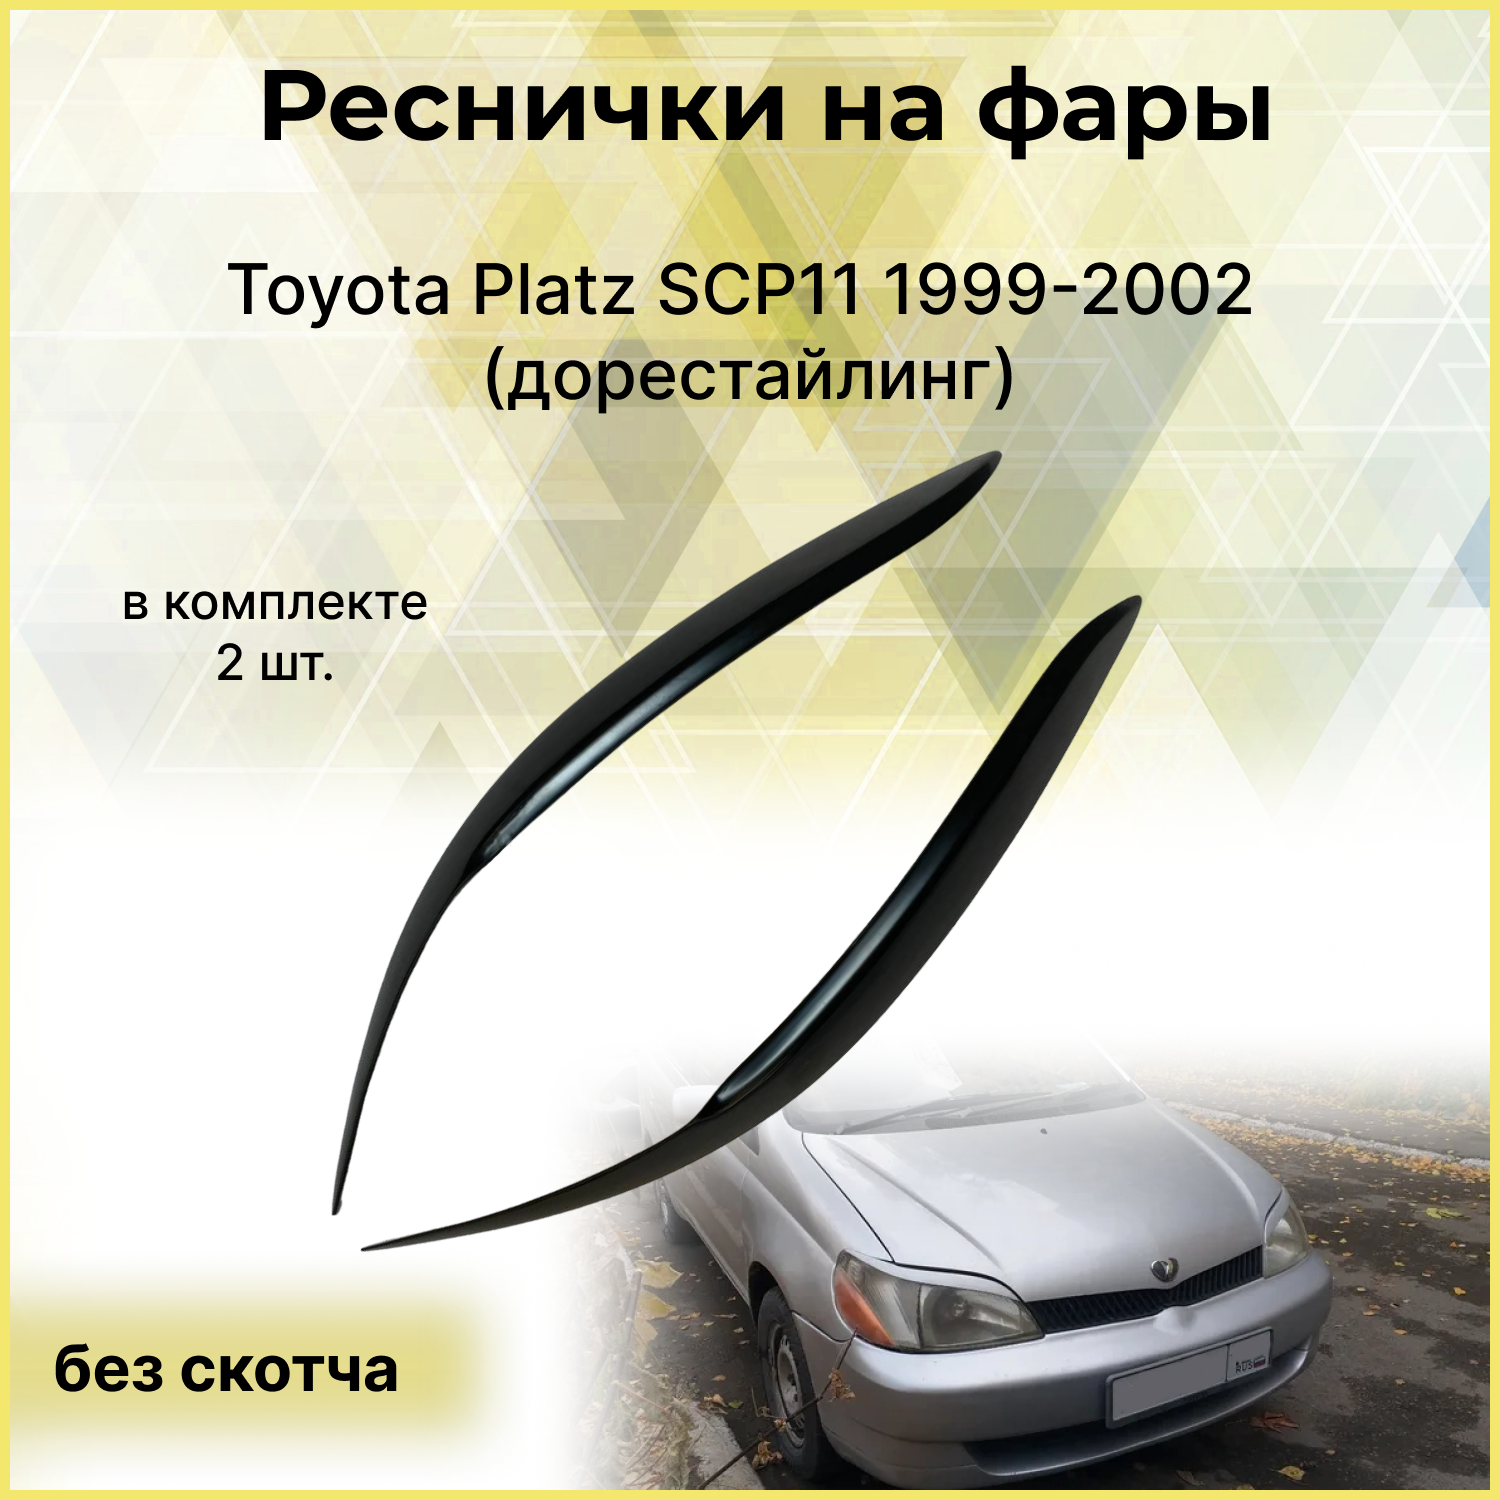 Реснички на фары для Toyota Platz SCP11 1999-2002 (дорестайлинг)